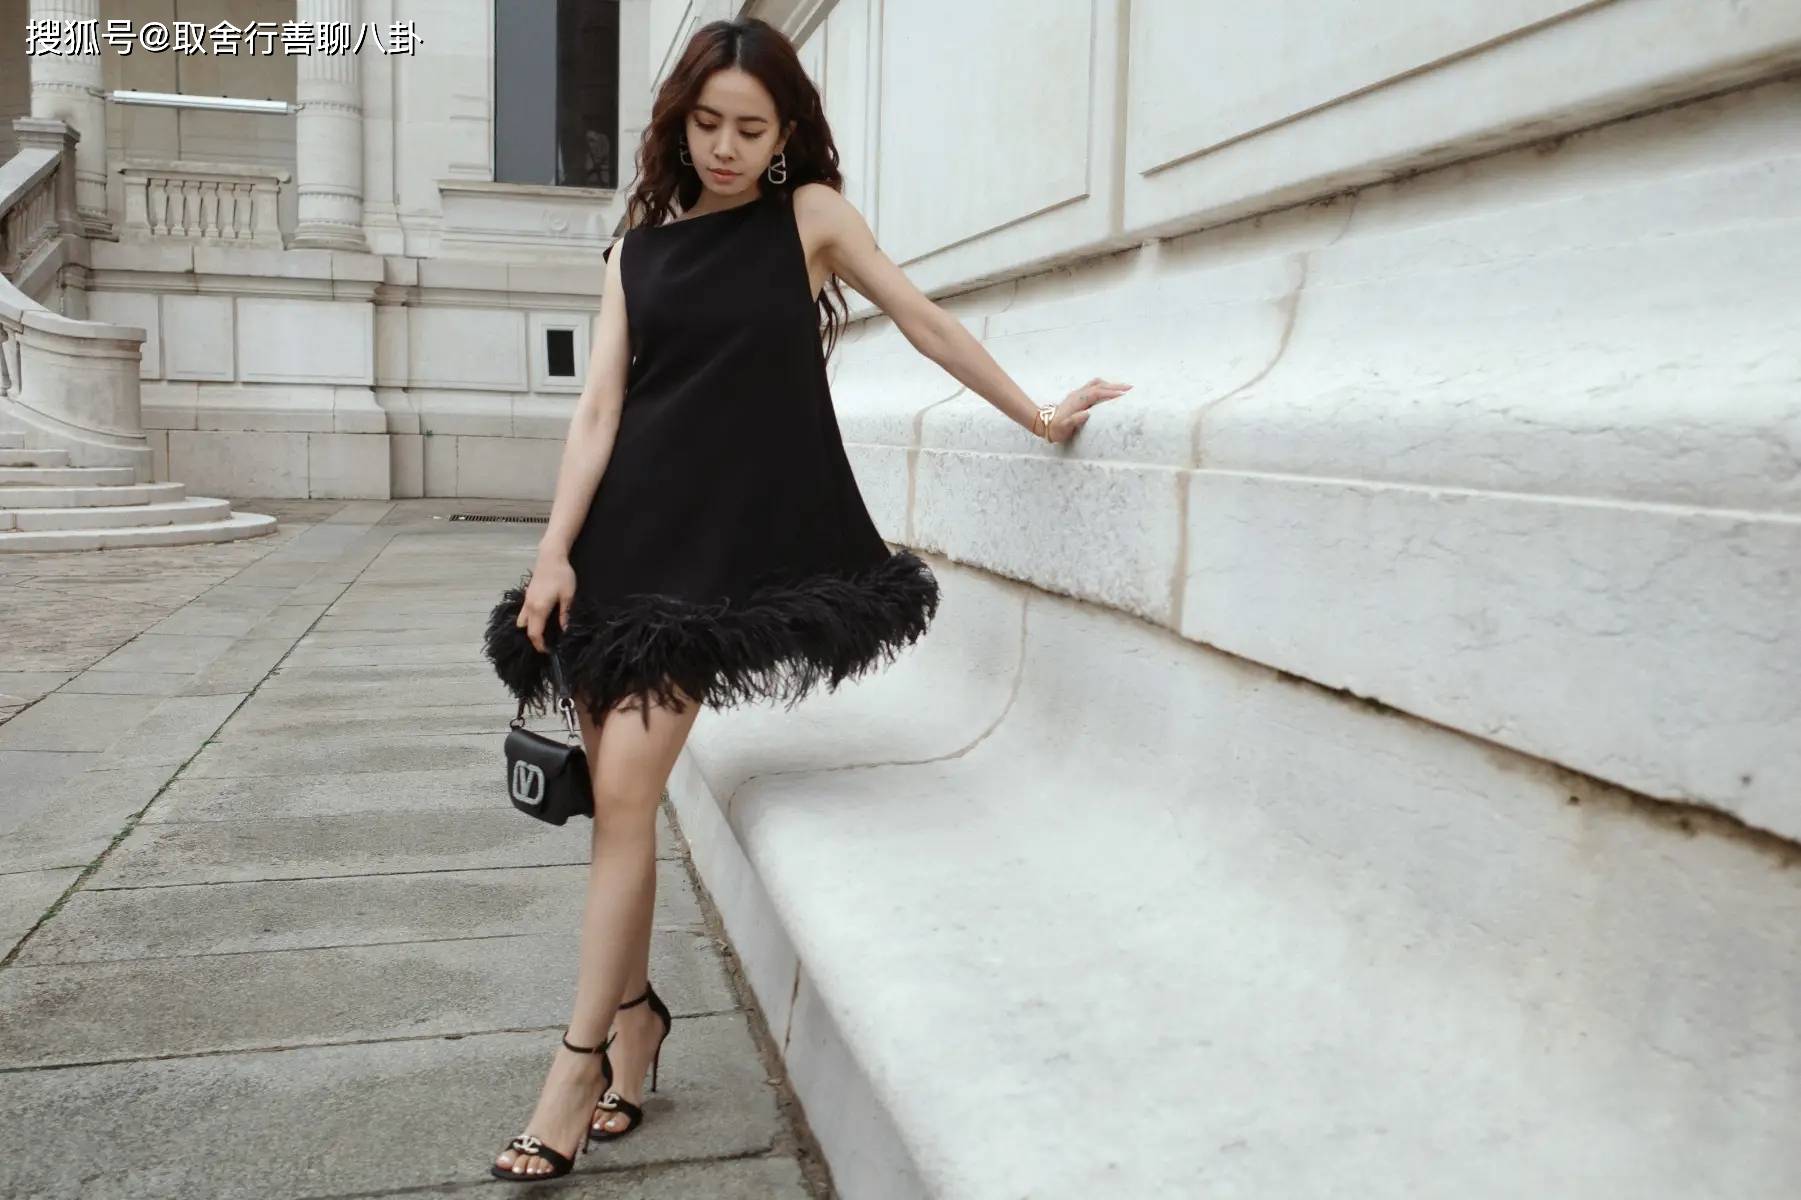 43岁蔡依林出席巴黎时装周,穿黑色羽毛裙气场十足,波浪卷发迷人